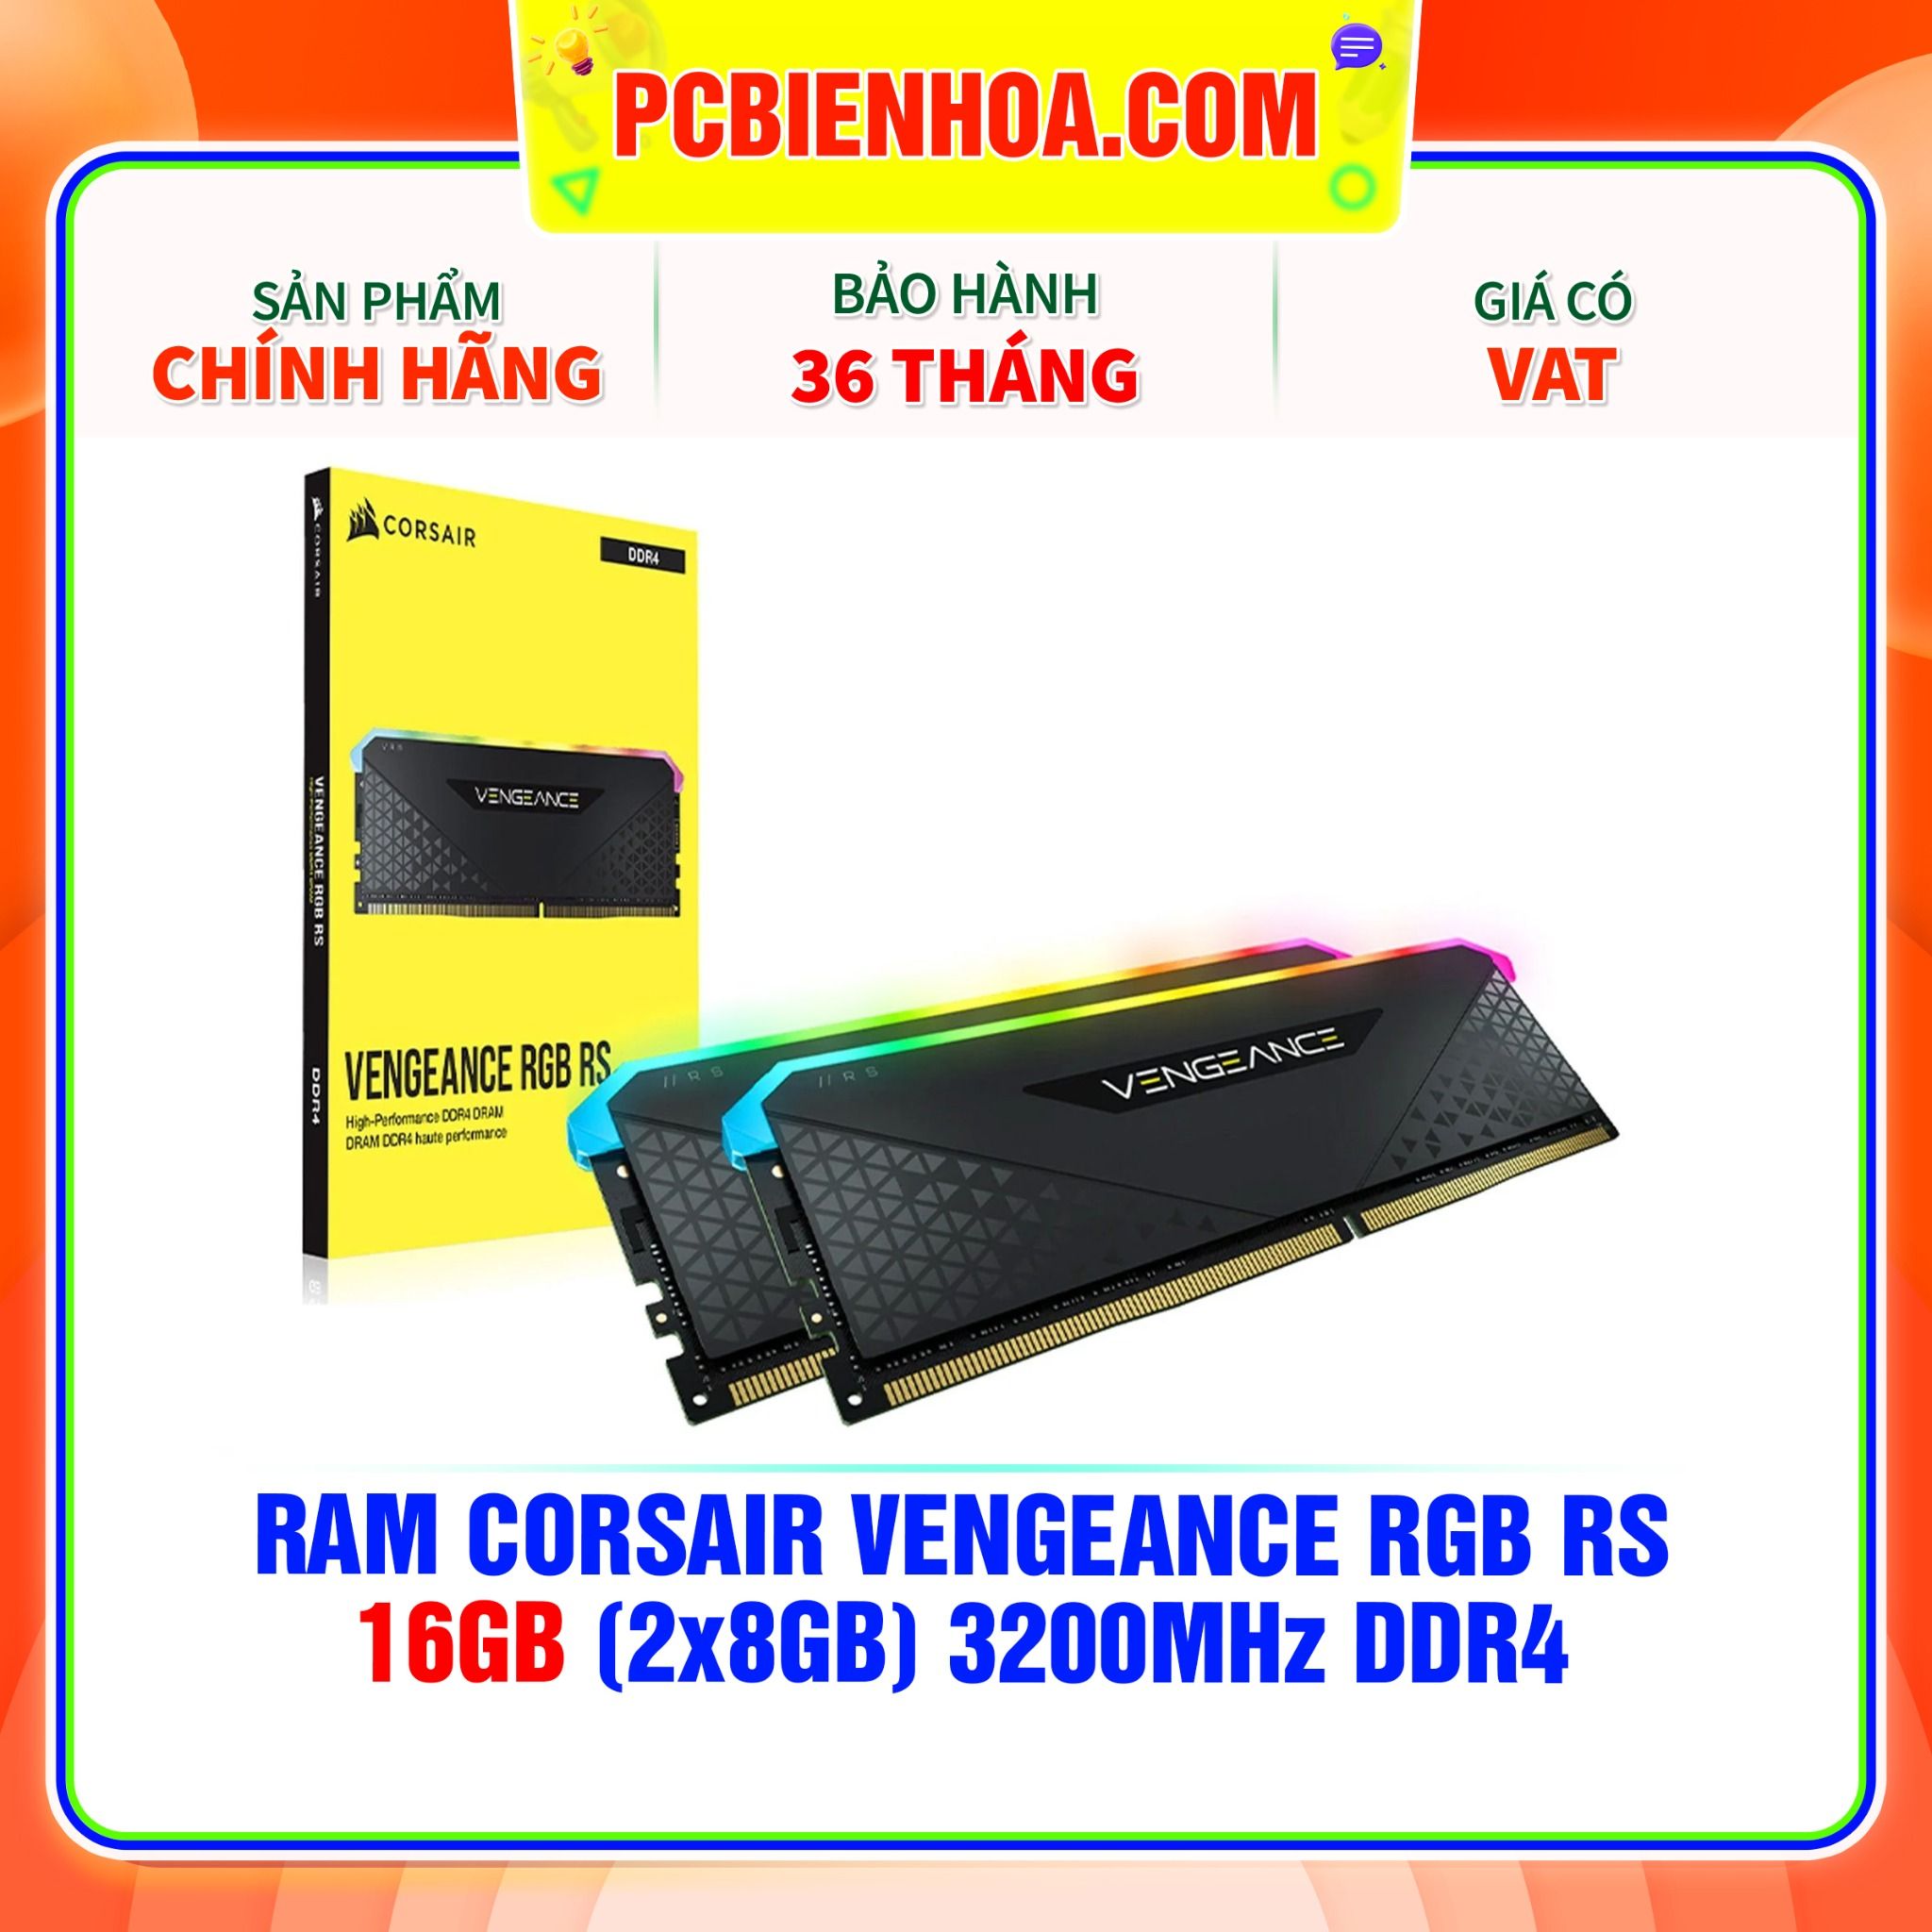  RAM CORSAIR VENGEANCE RGB RS 16GB (2x8GB) 3200MHz DDR4 C16 (CMG16GX4M2E3200C16) 